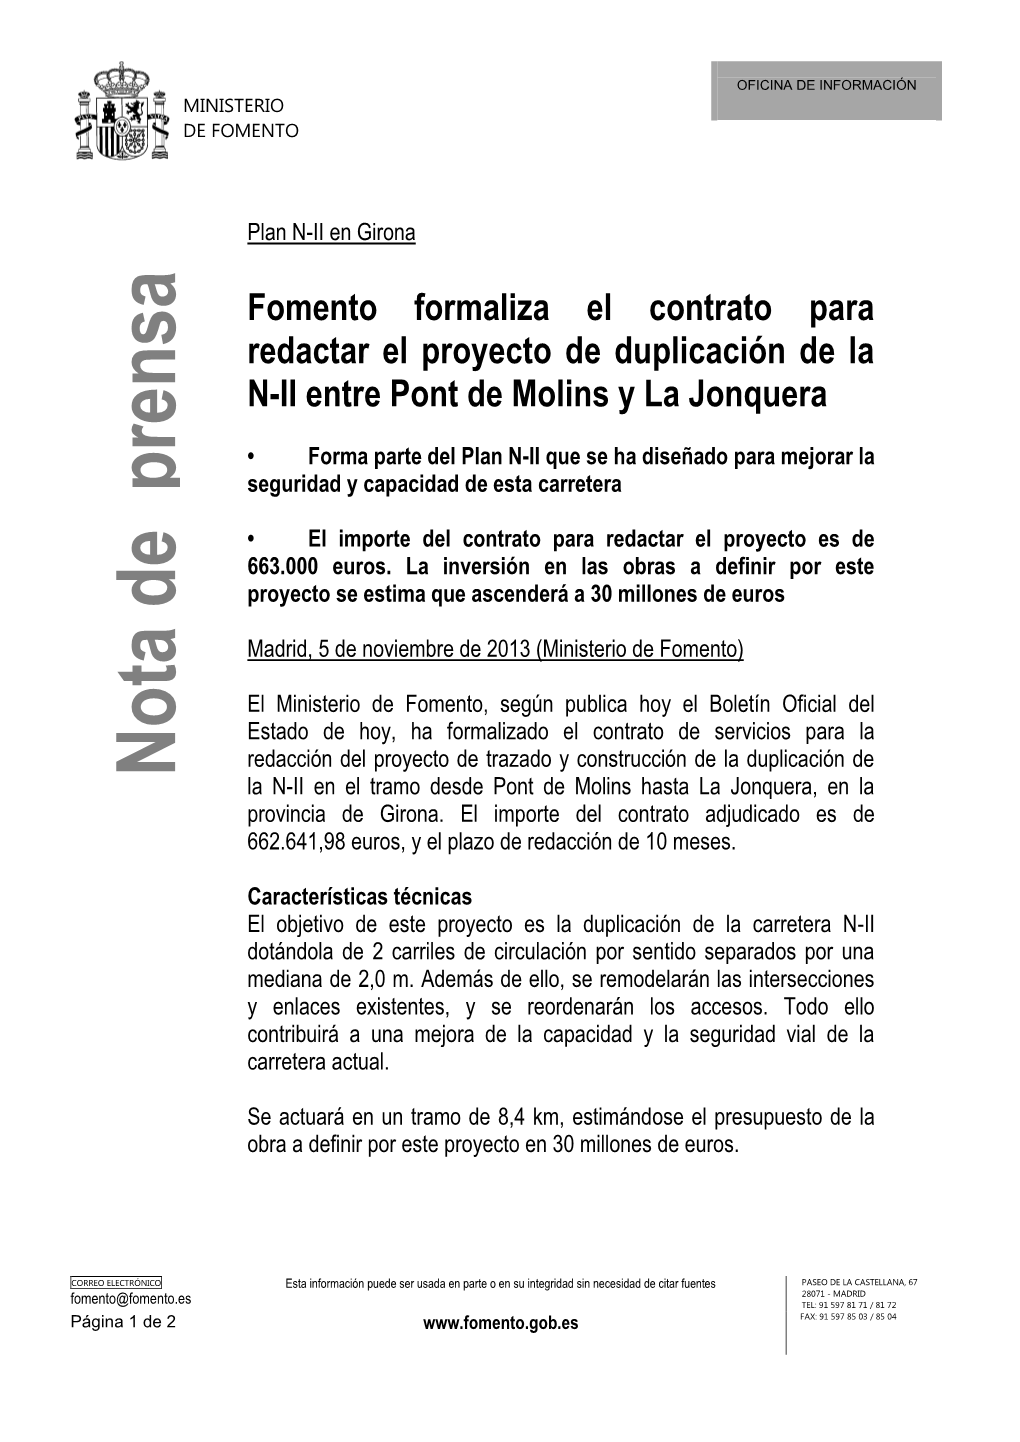 Fomento Formaliza El Contrato Para Redactar El Proyecto De Duplicación De La N-II Entre Pont De Molins Y La Jonquera